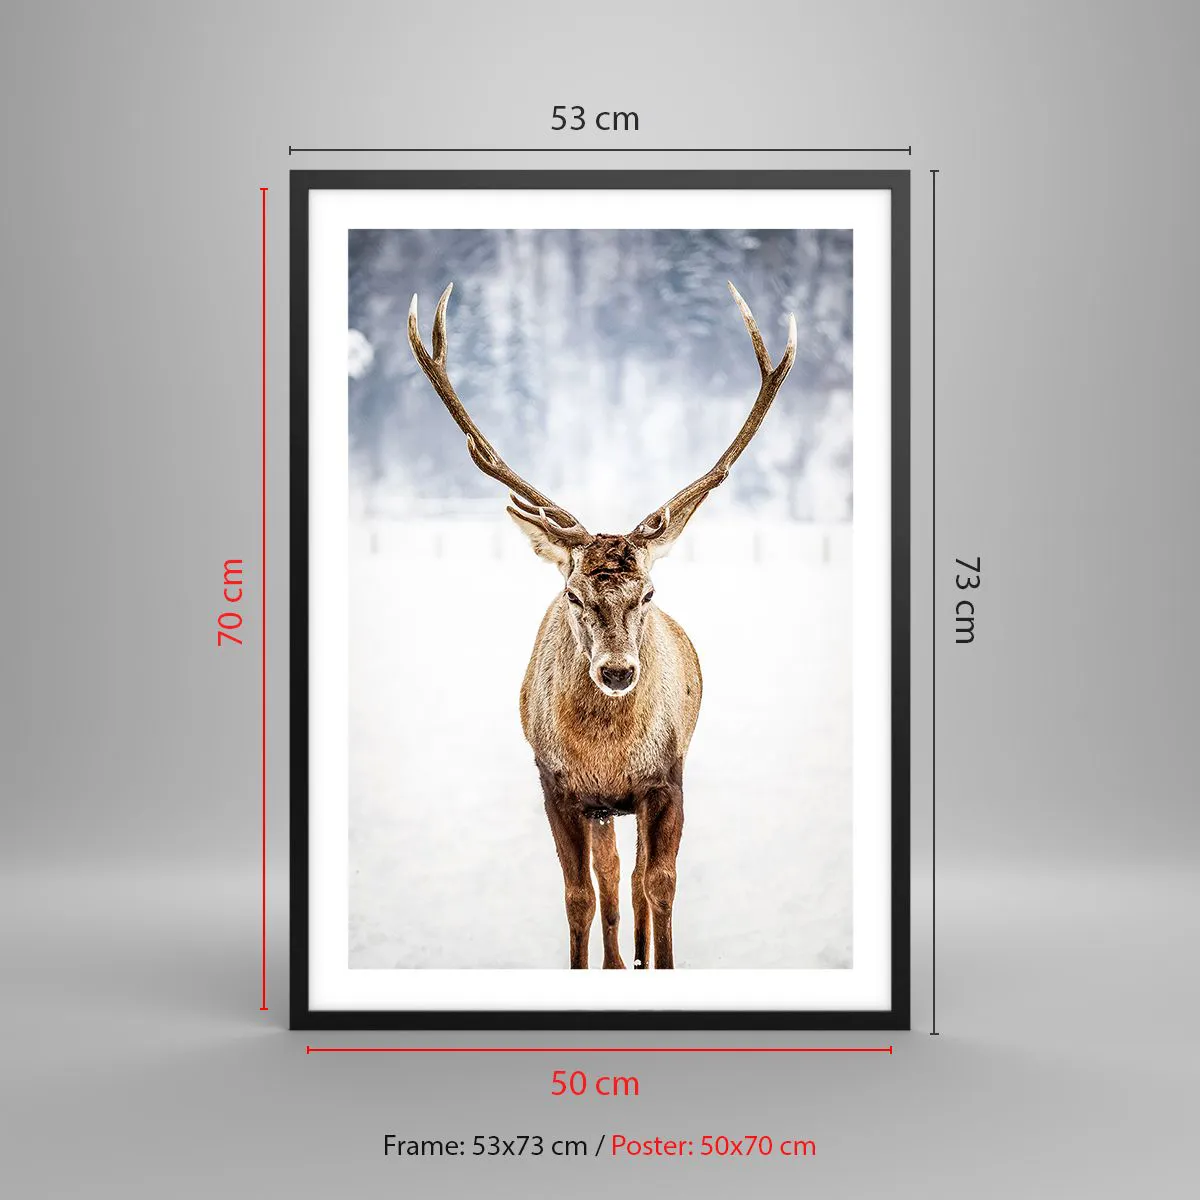 Poster in cornice nera Arttor 50x70 cm - Direttamente dalla nebbia di neve  - Renna, Animali, Inverno, Paesaggio, Corna, Per il Salotto, Per la Camera